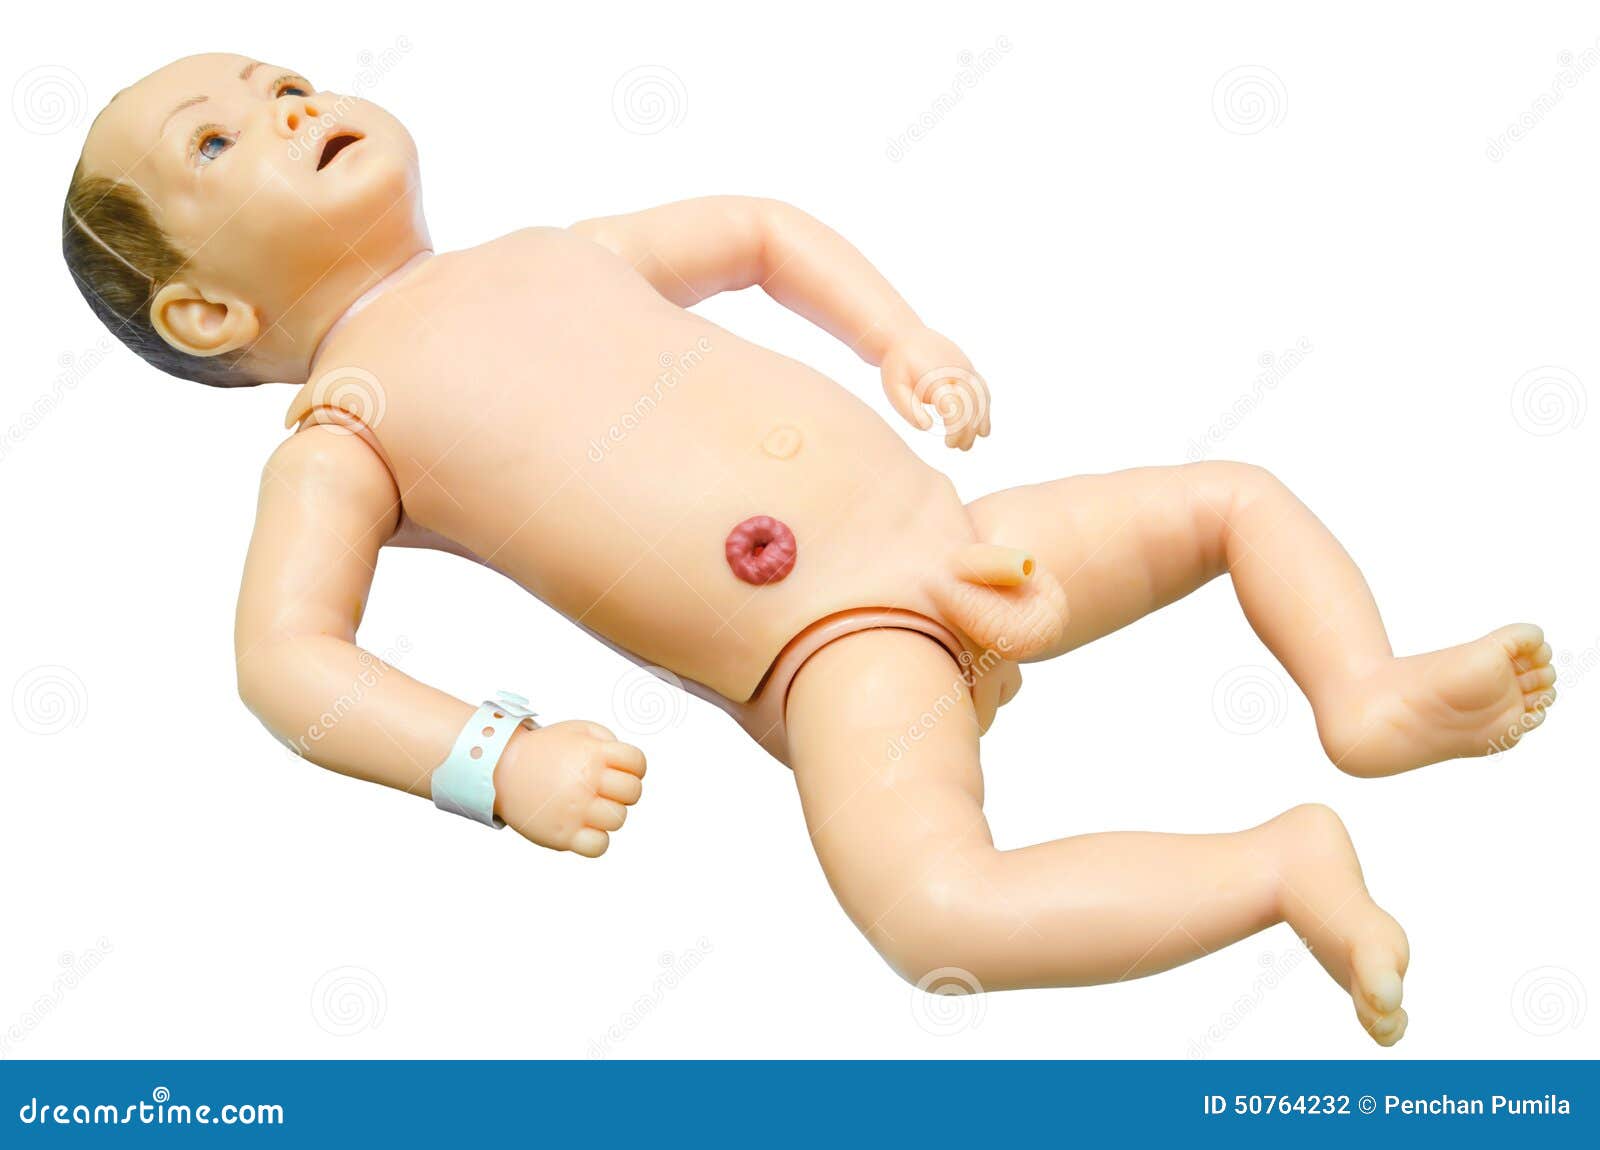 Половые органы новорожденного мальчика. Половые органы младенца. Половые органы младенца мальчика. Младенец мальчик анатомия.